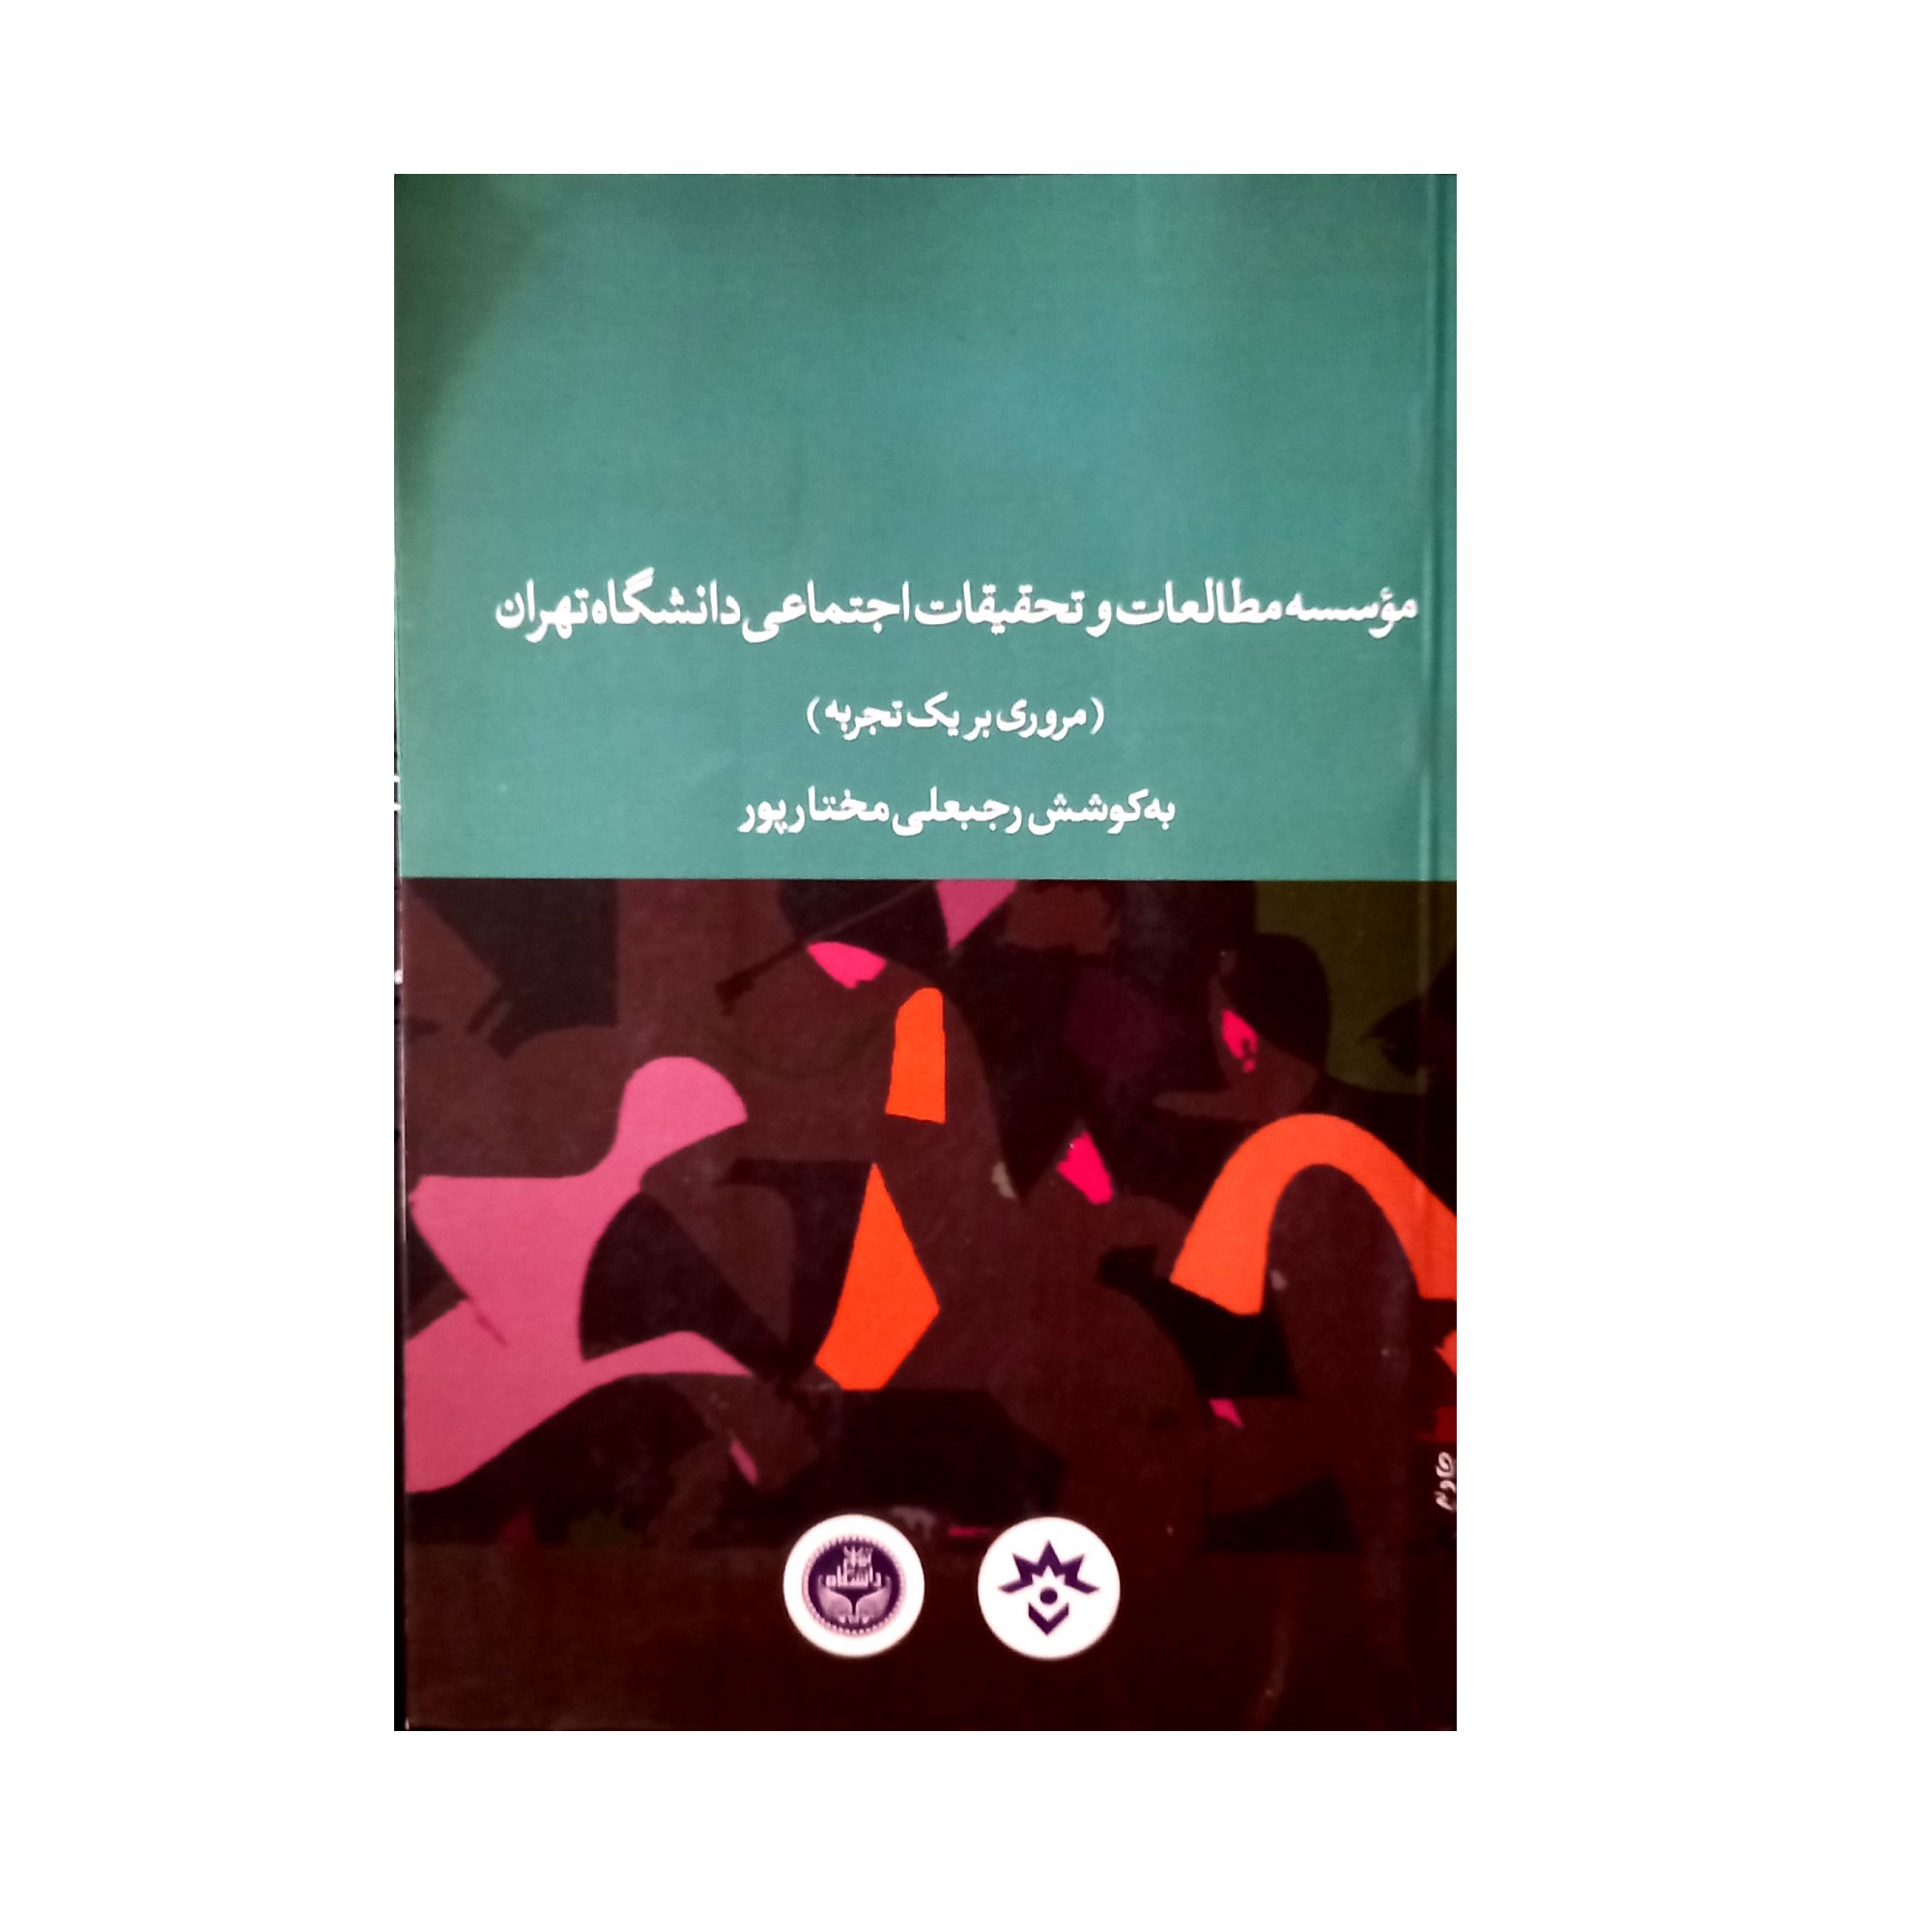 کتاب موسسه مطالعات و تحقیقات اجتماعی دانشگاه تهران (مروری بر یک تجربه) اثر رجبعلی مختار پور پژوهشکده مطالعات فرهنگی و اجتماعی